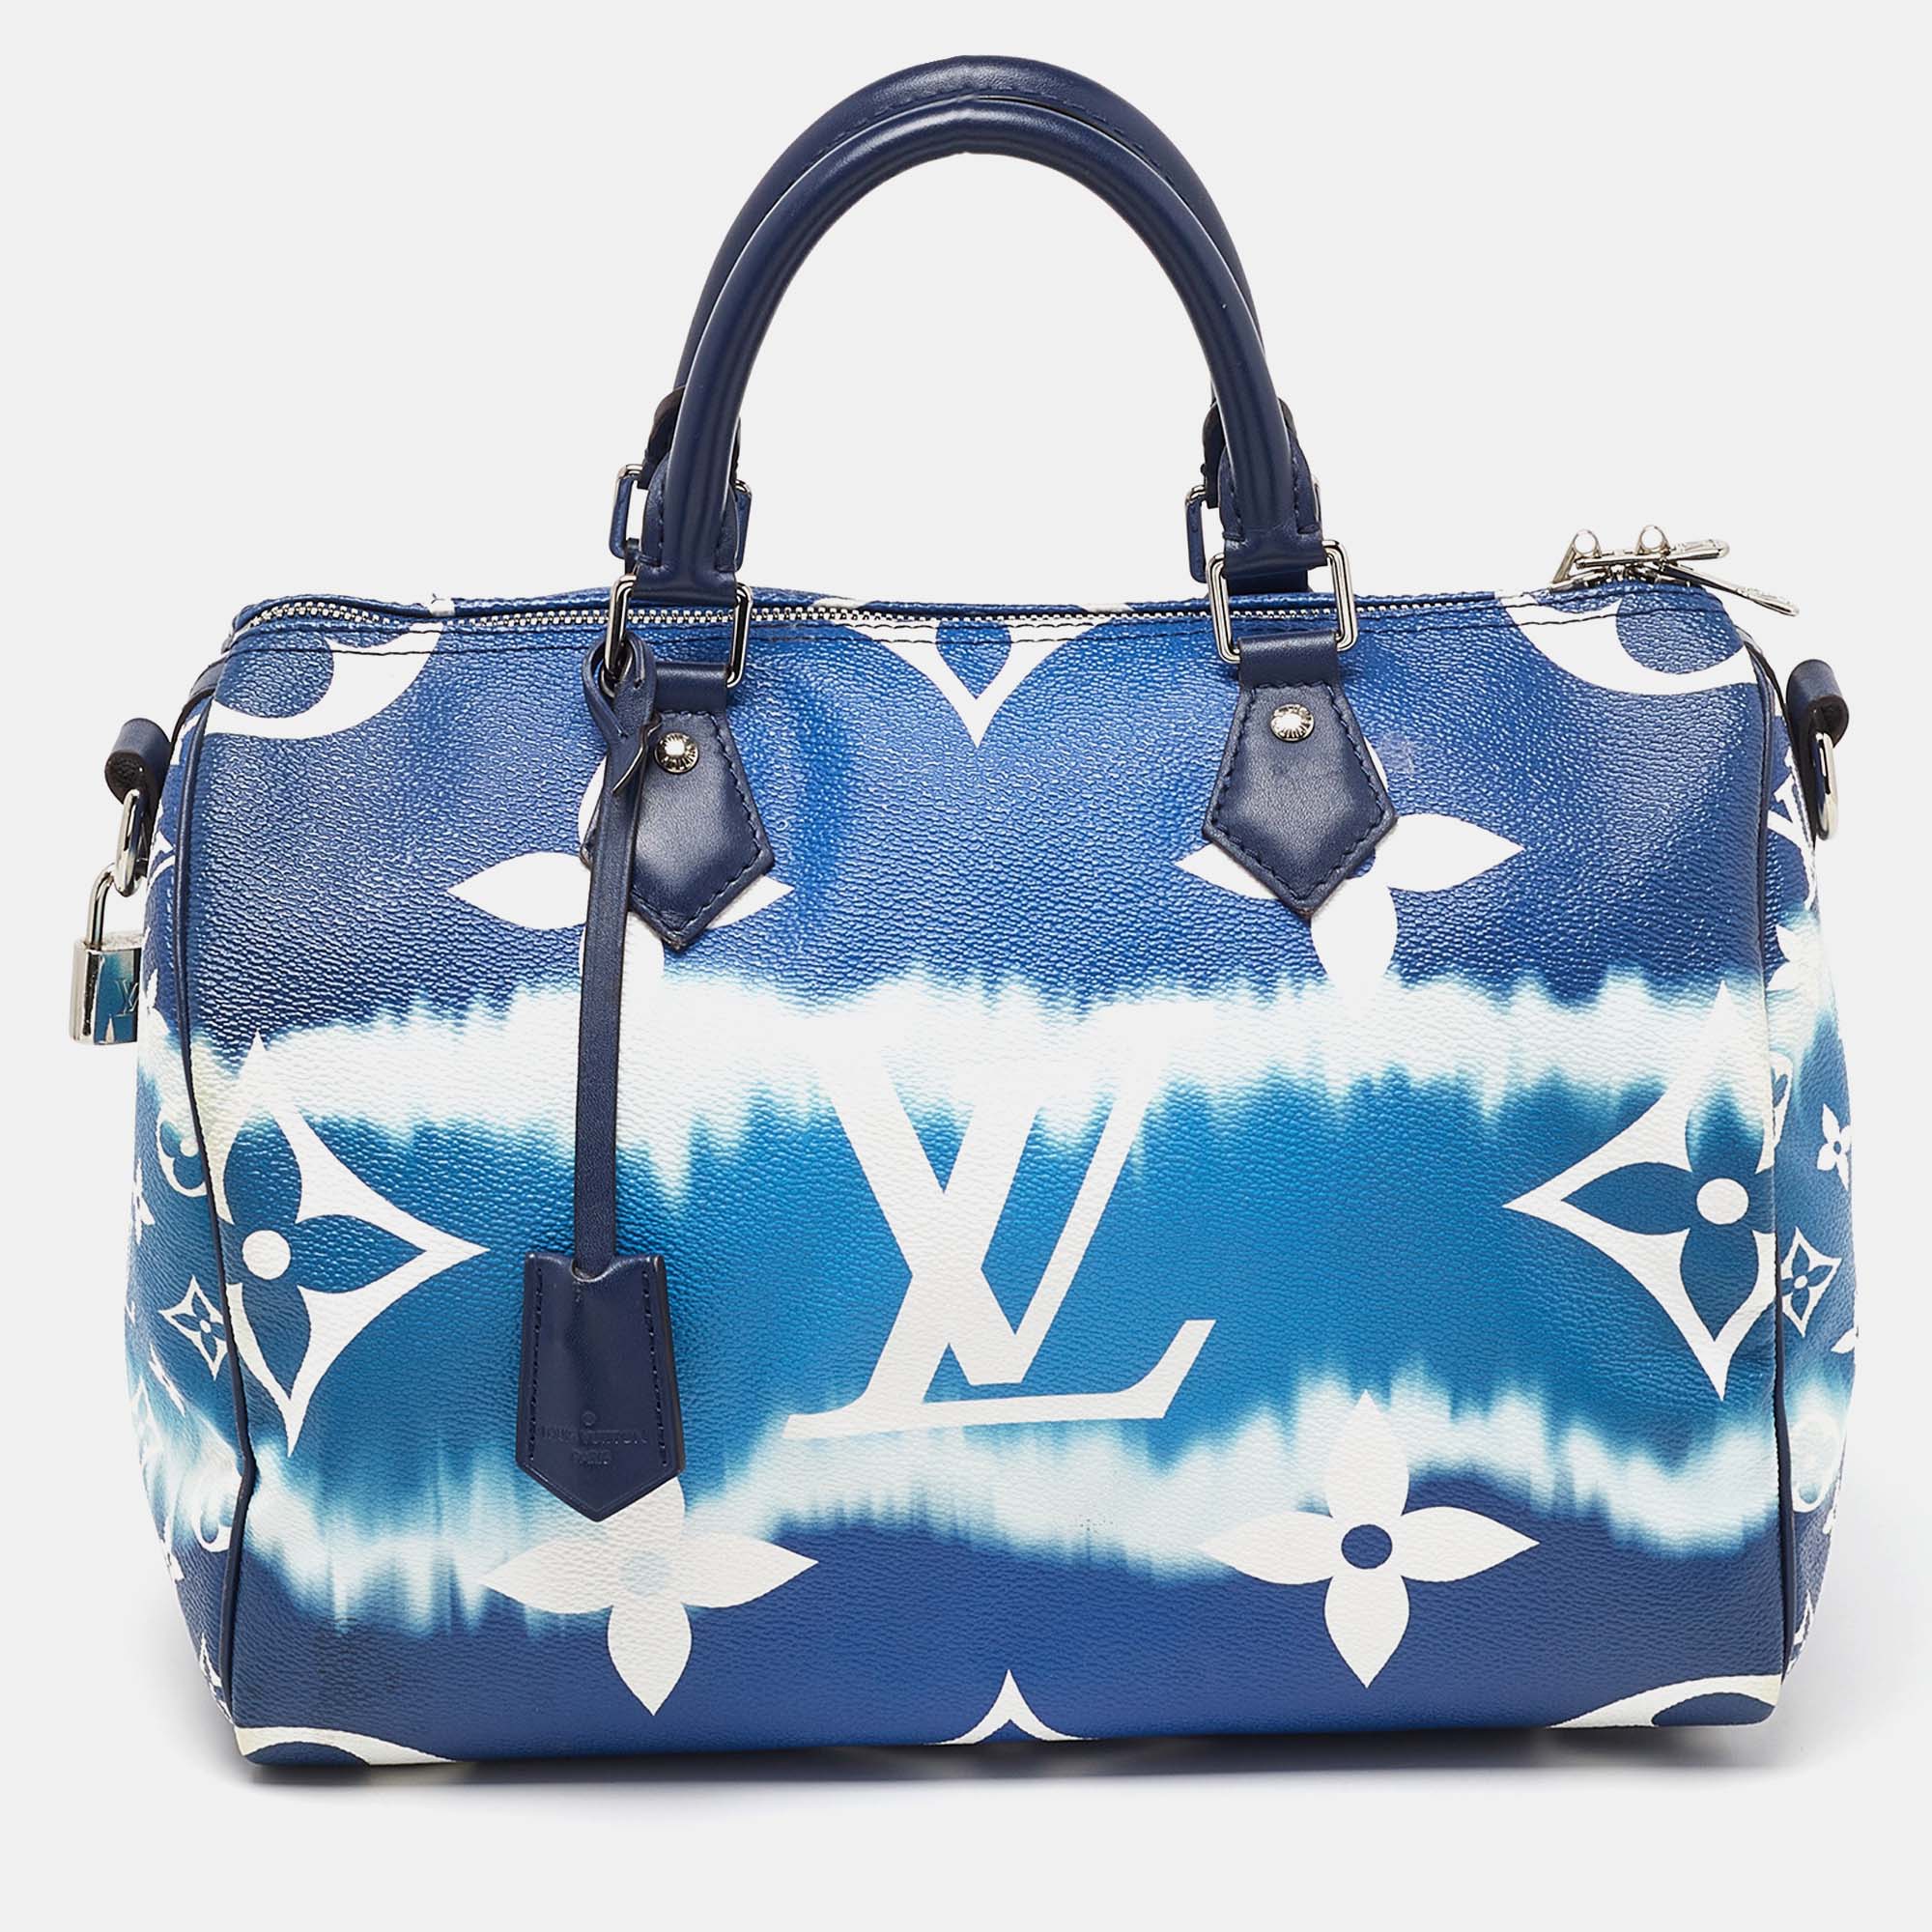 

Louis Vuitton Monogram Giant Canvas Speedy Bandouliere 30 Bag, Blue